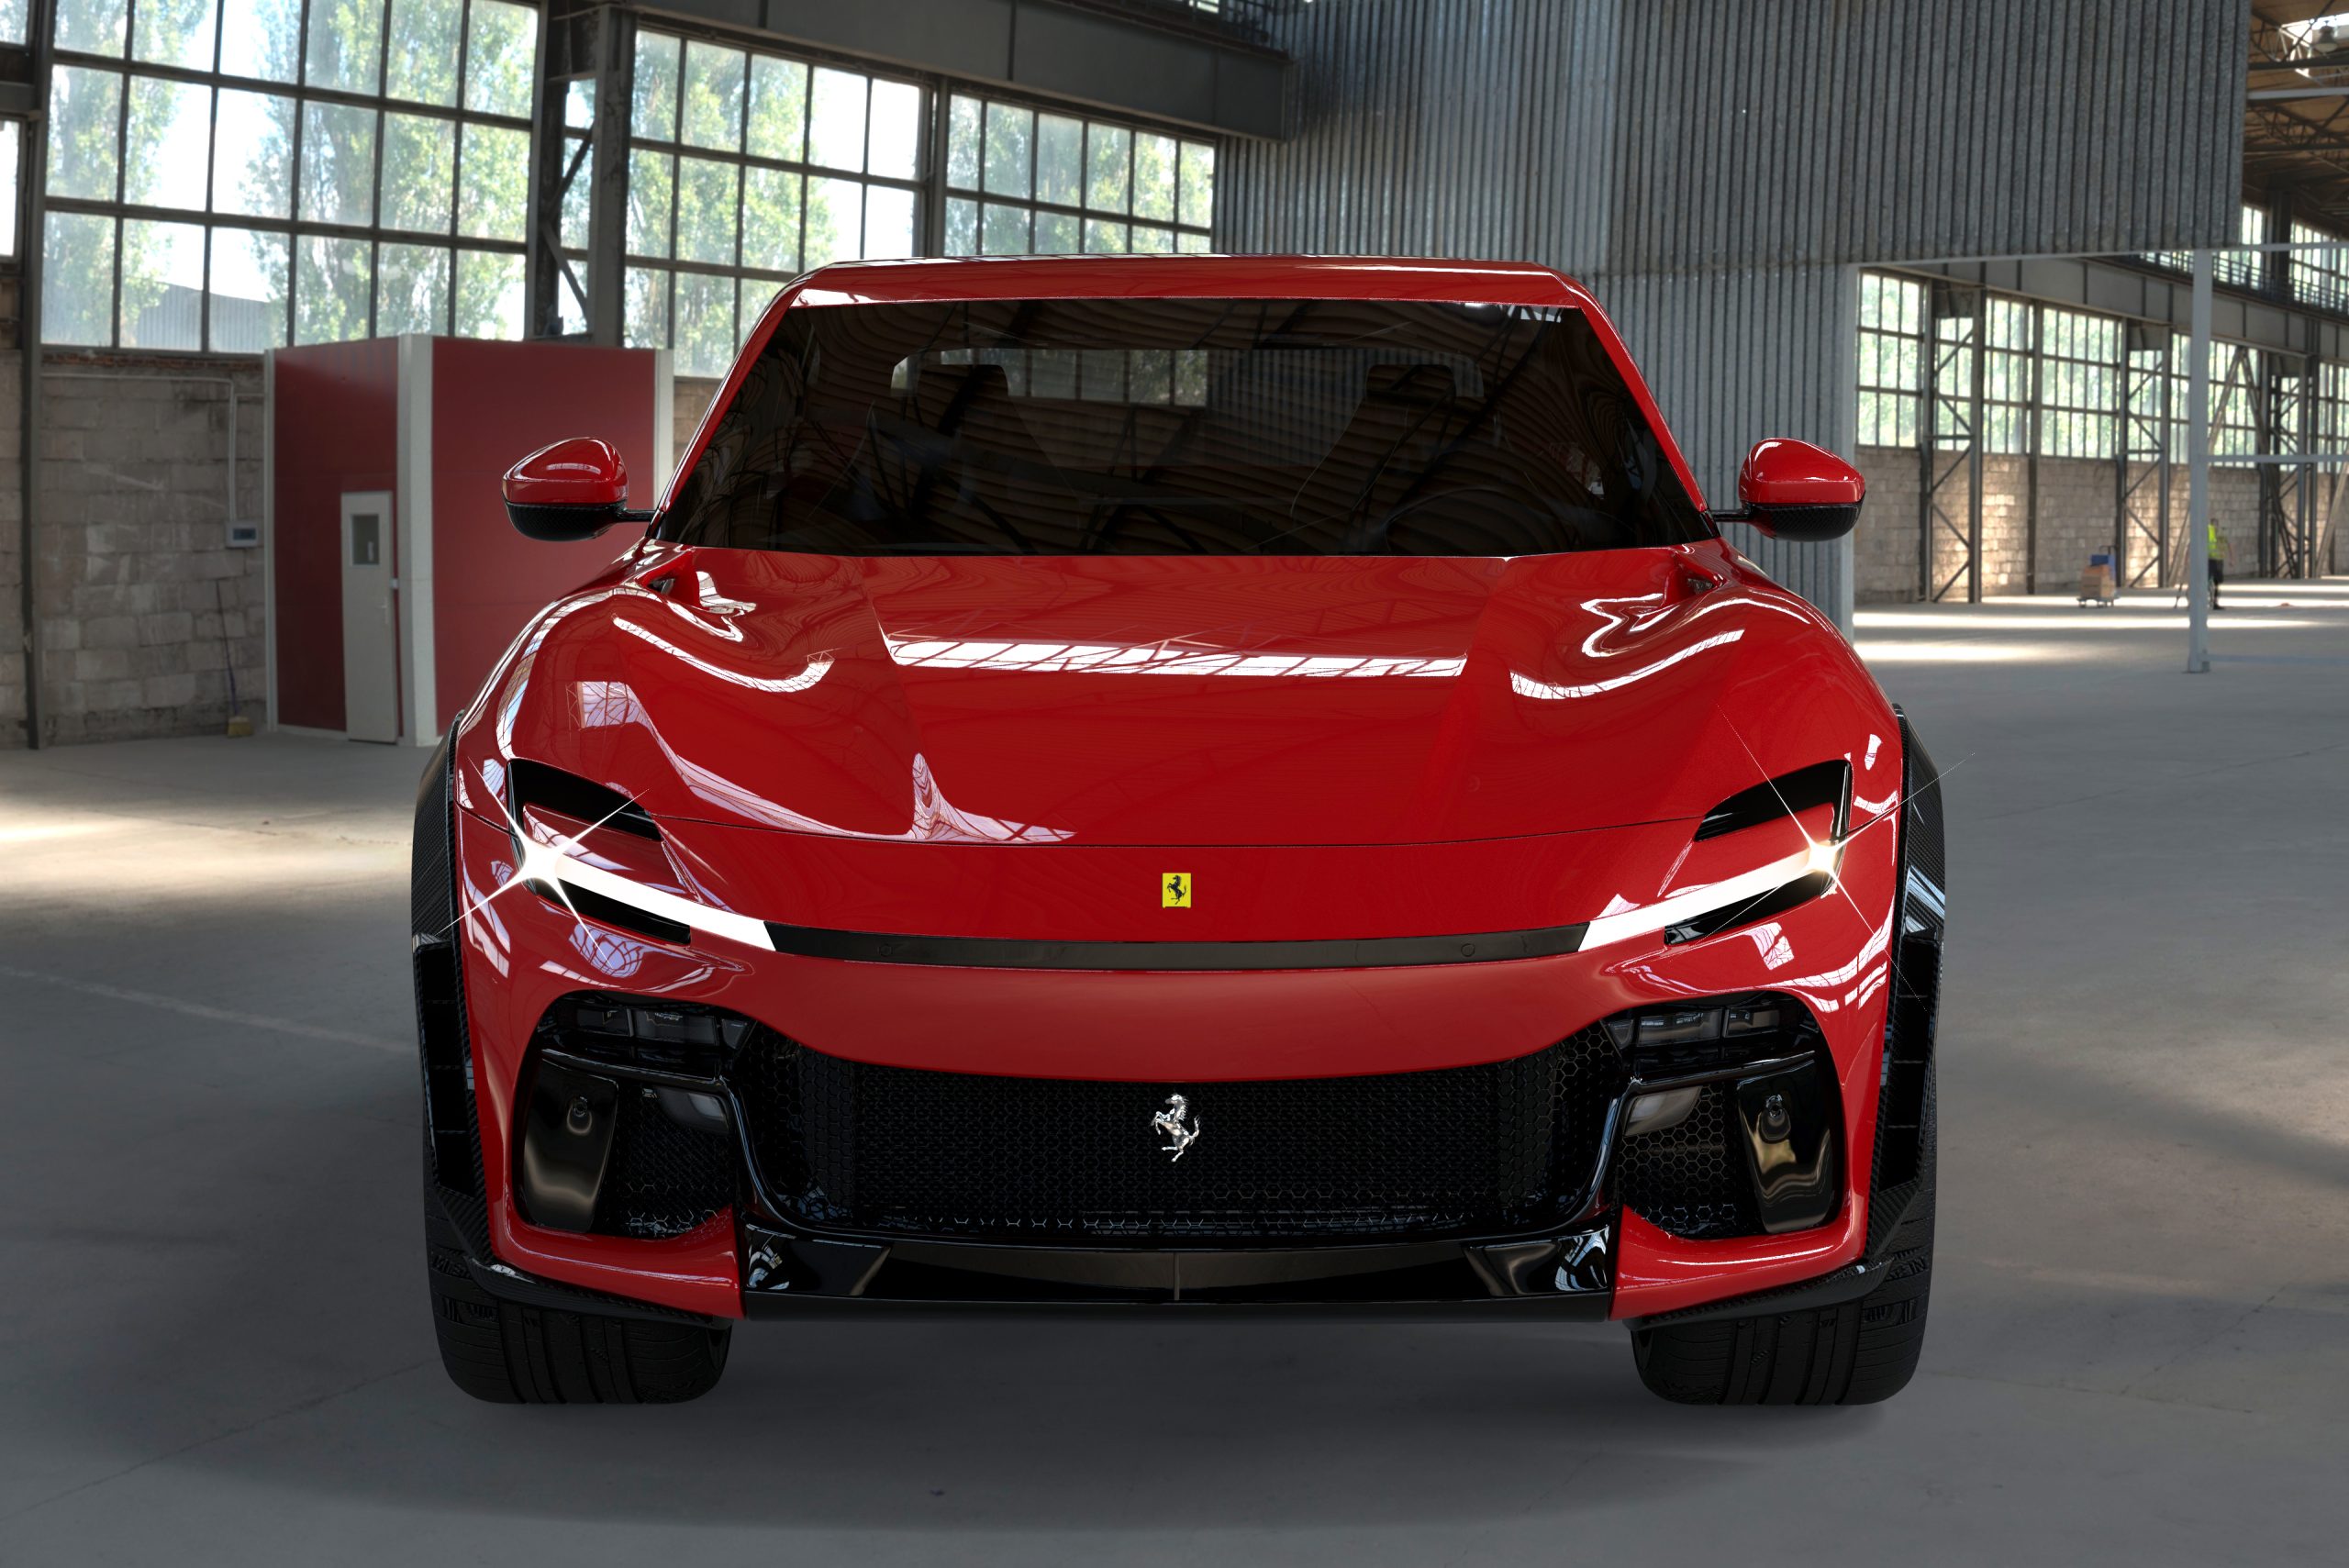 "Ferrari